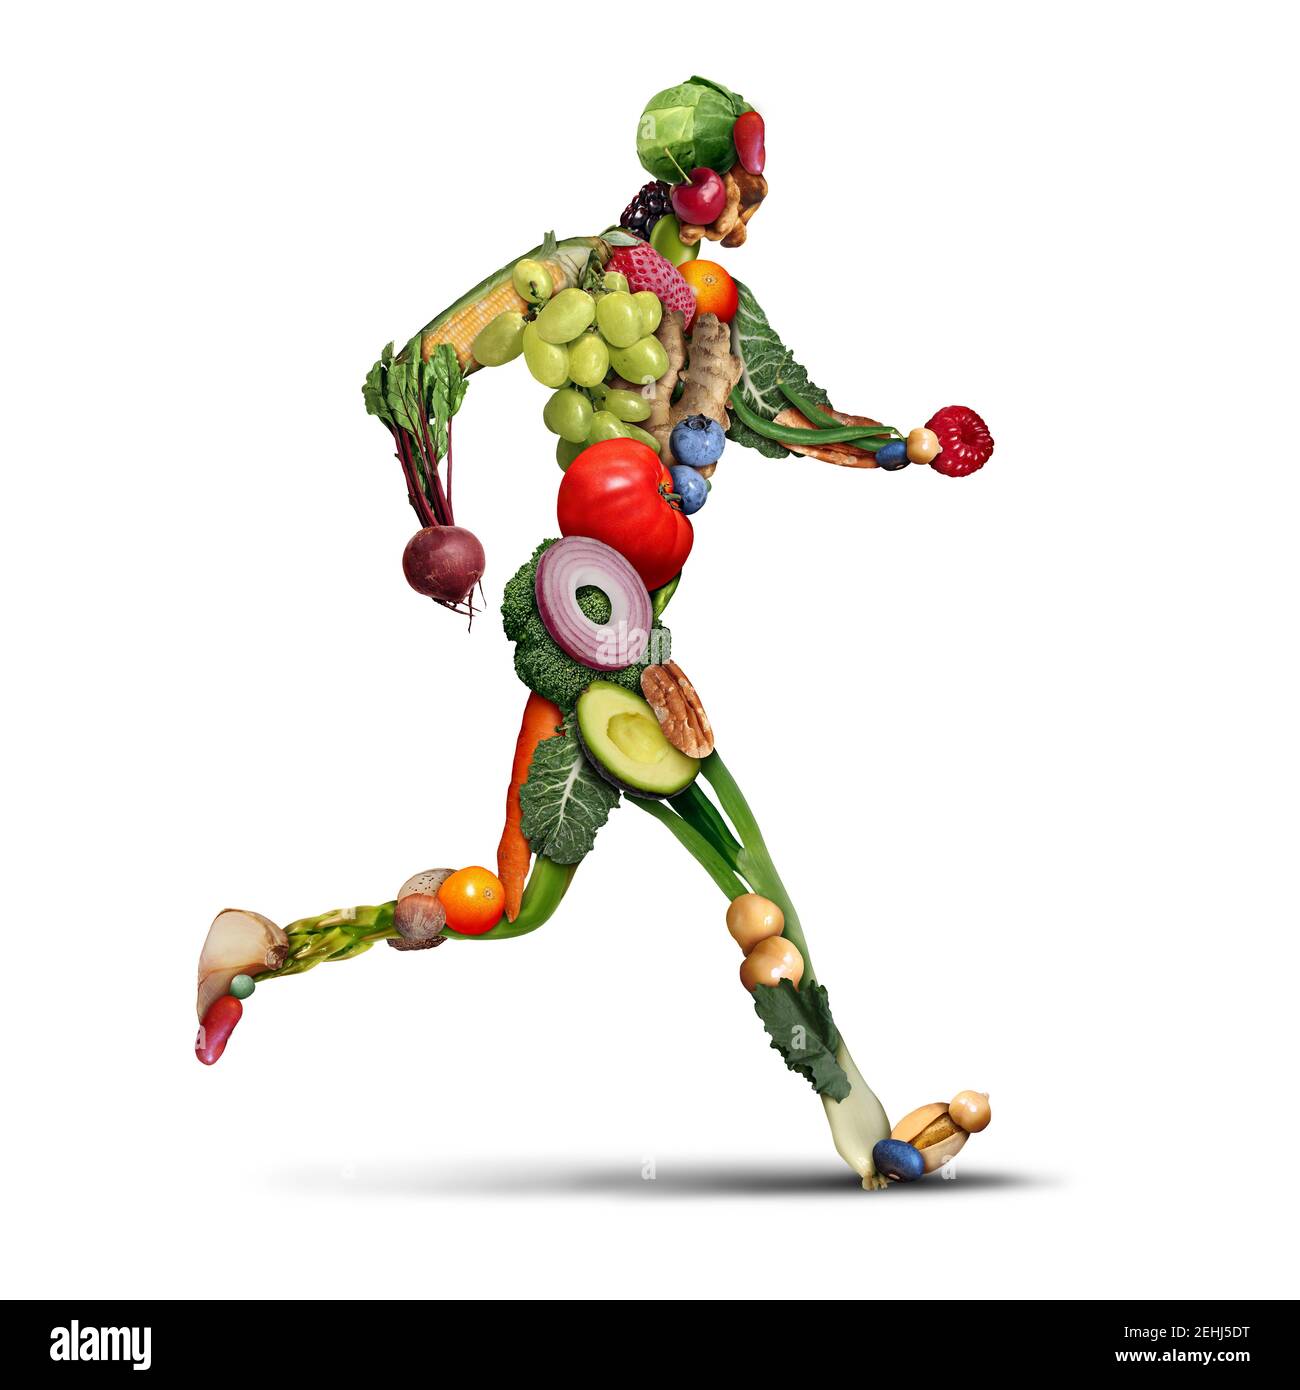 Régime et forme physique comme un mode de vie sain de l'exercice et de manger des fruits et des légumes pour perdre du poids comme une personne courant ou jogging fait de frais. Banque D'Images